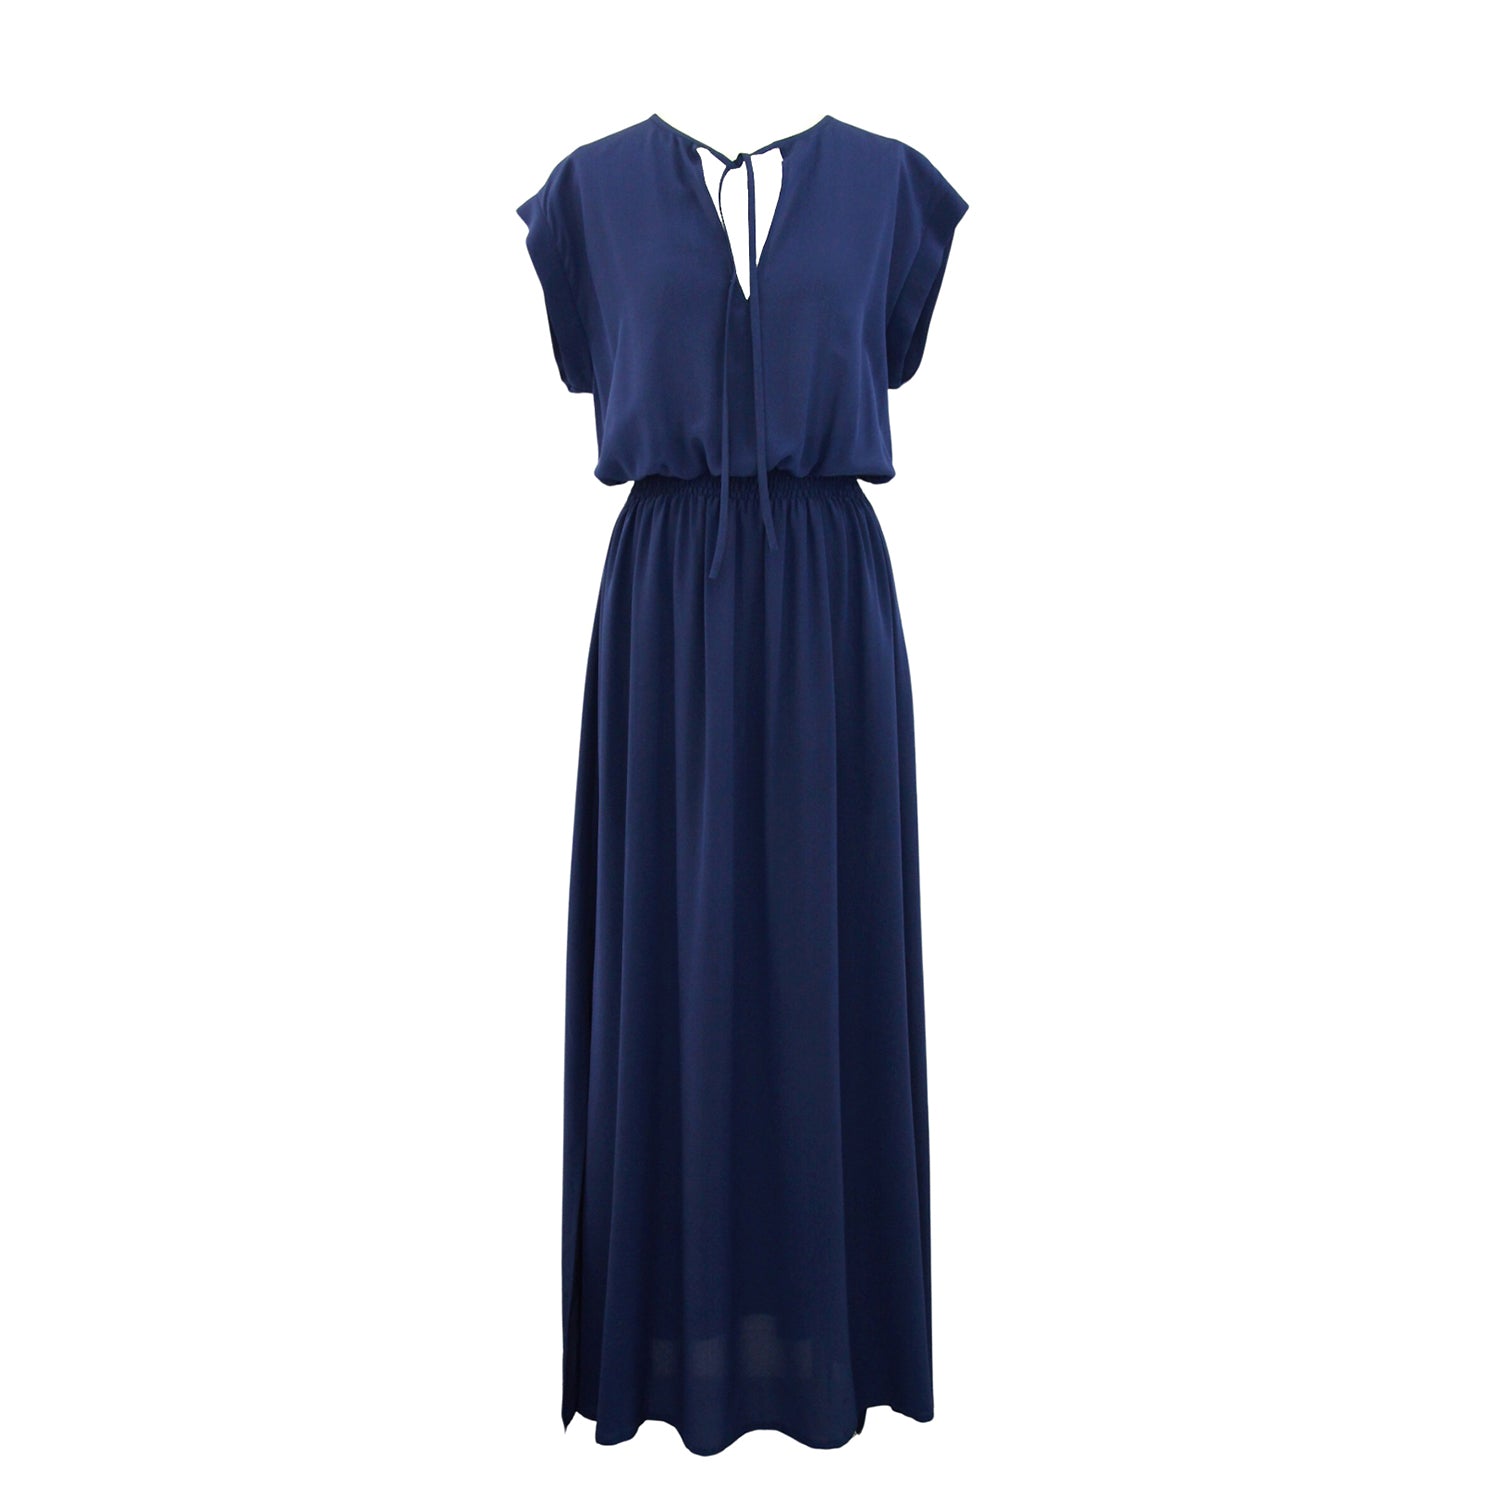 “BALI” SILK DRESS - Night Blue